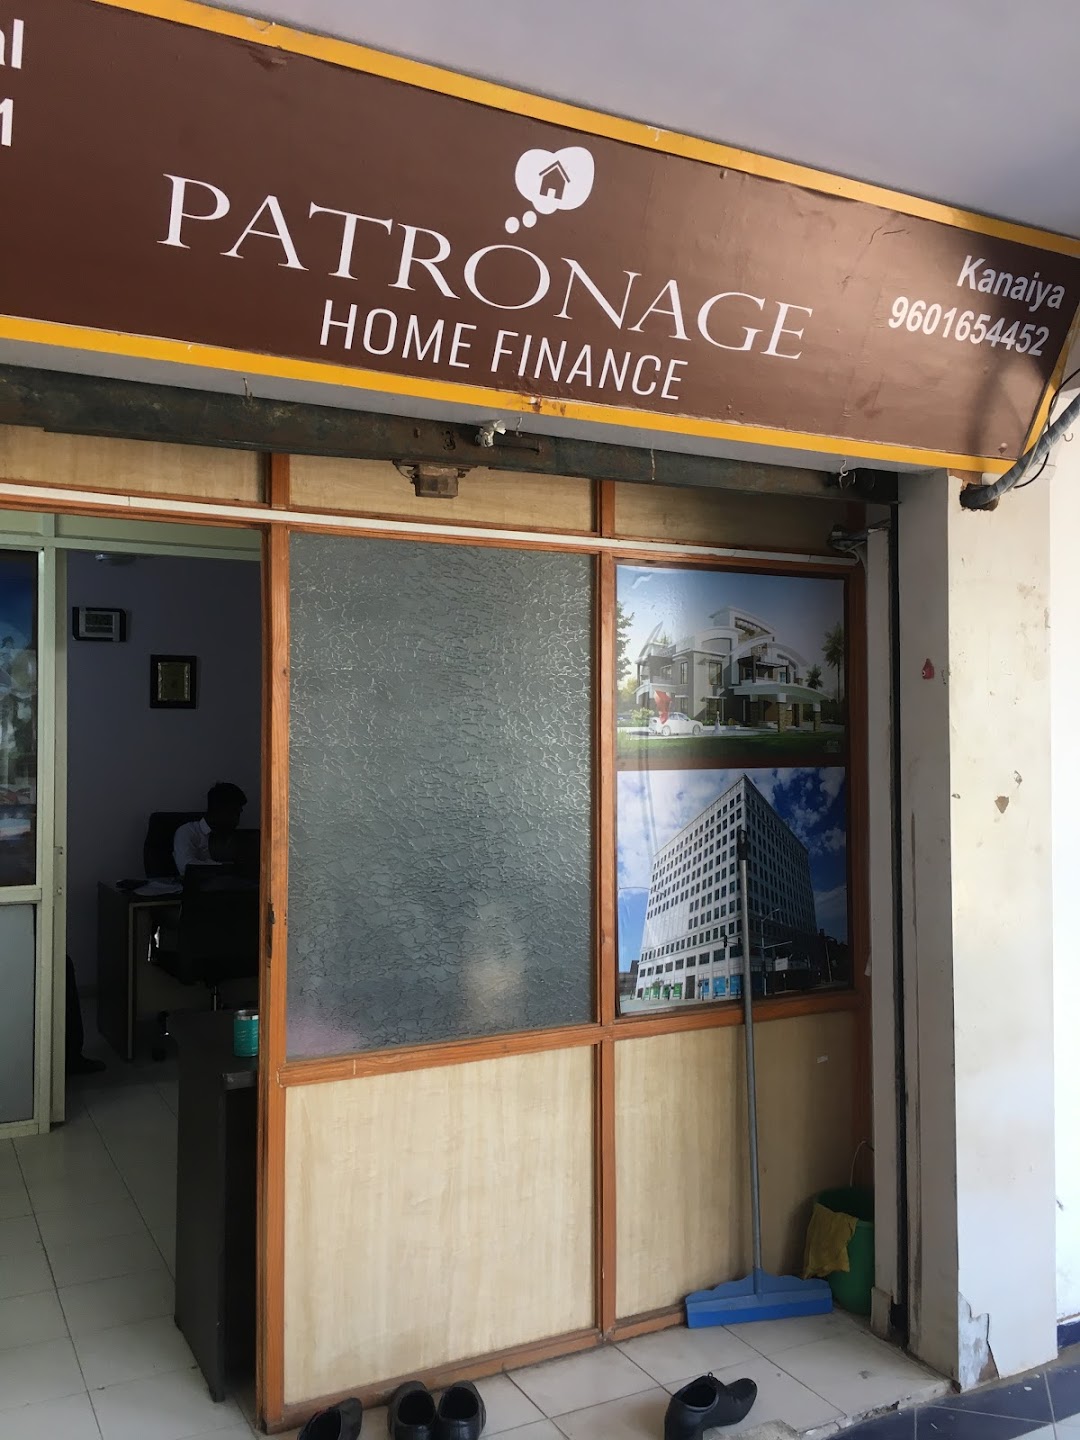 patronage home finance